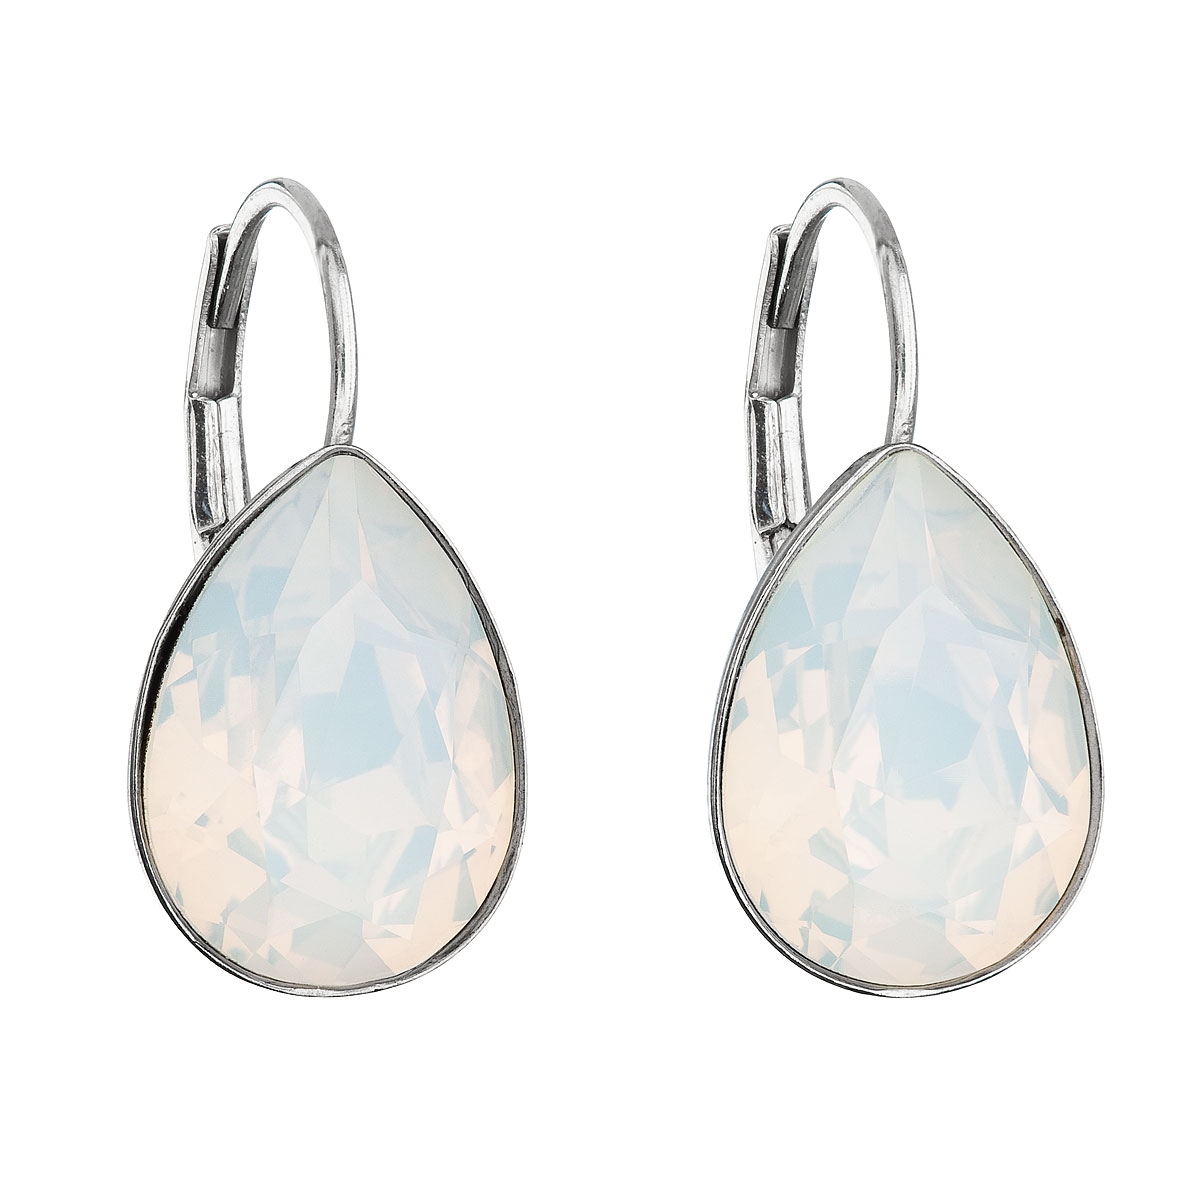 Strieborné náušnice s kvapky s kameňmi Crystals from Swarovski ® White Opal